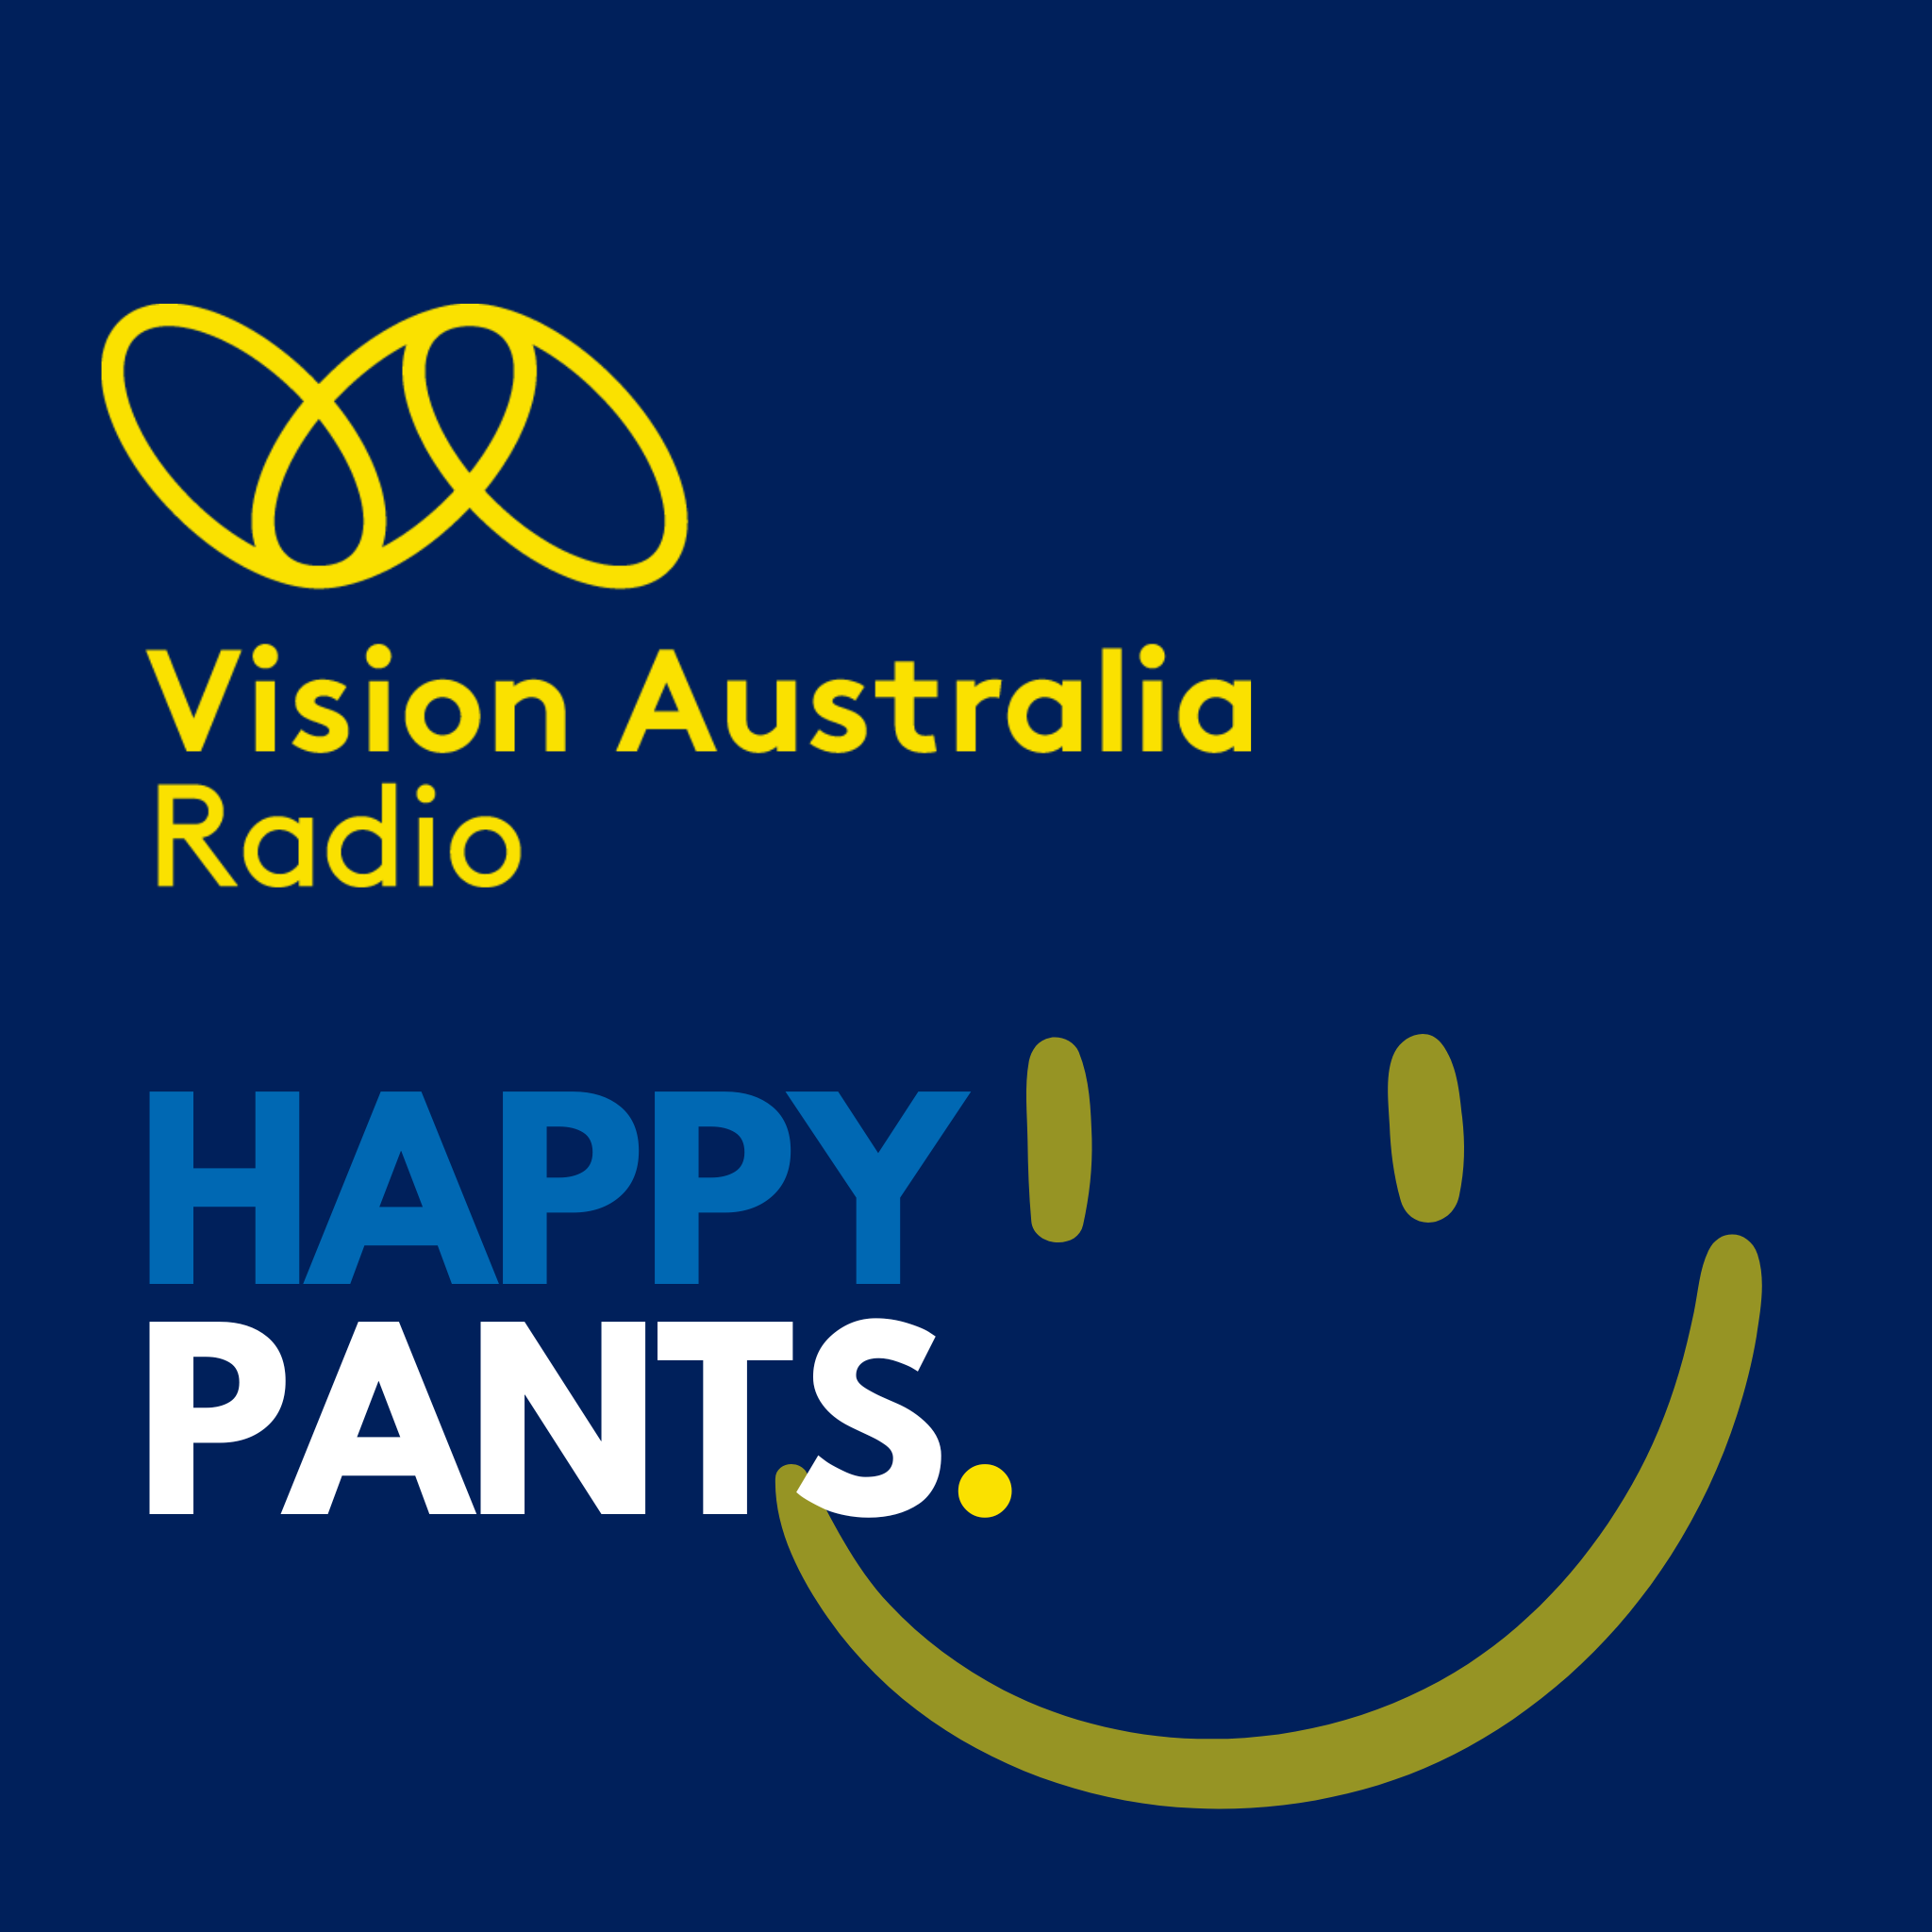 Happy Pants - January 27